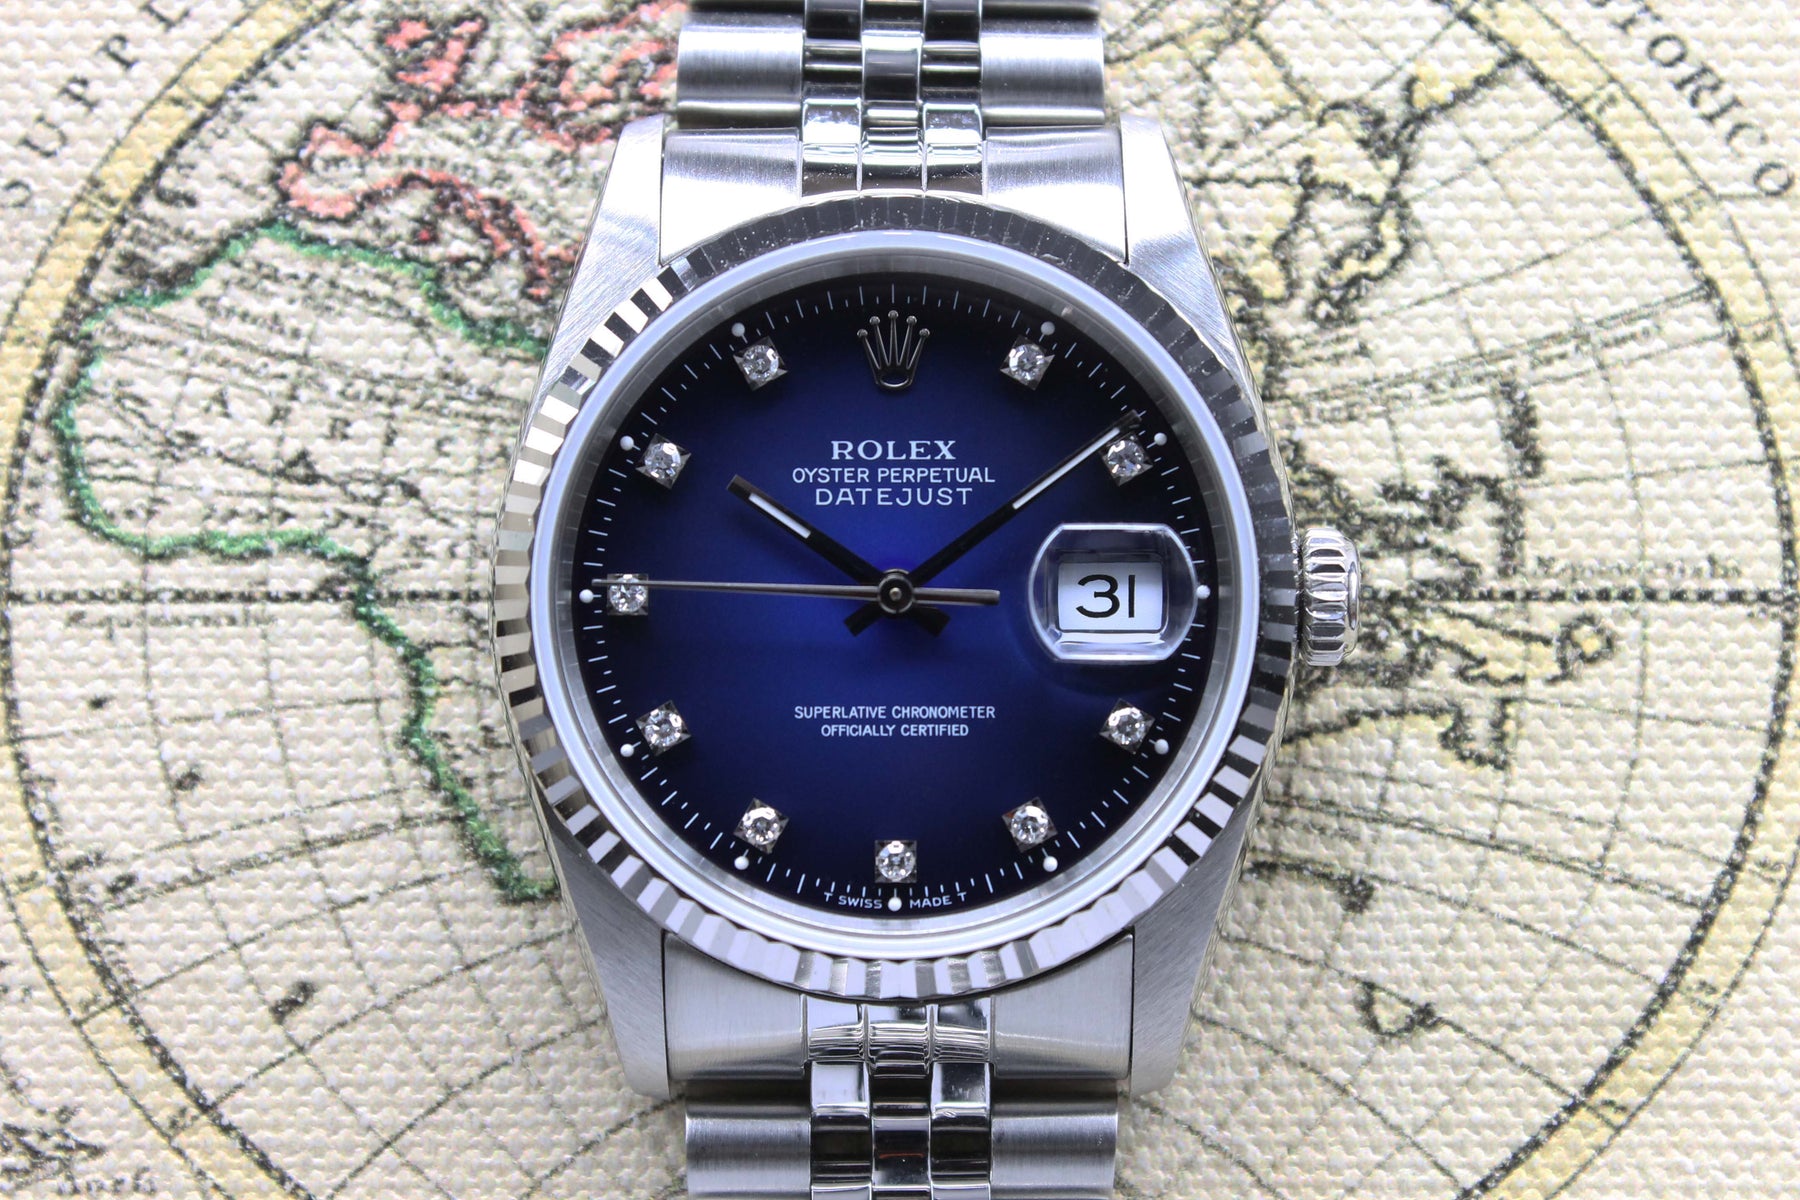 1991 Rolex Datejust Blue Vignette Diamond Dial Ref. 16234